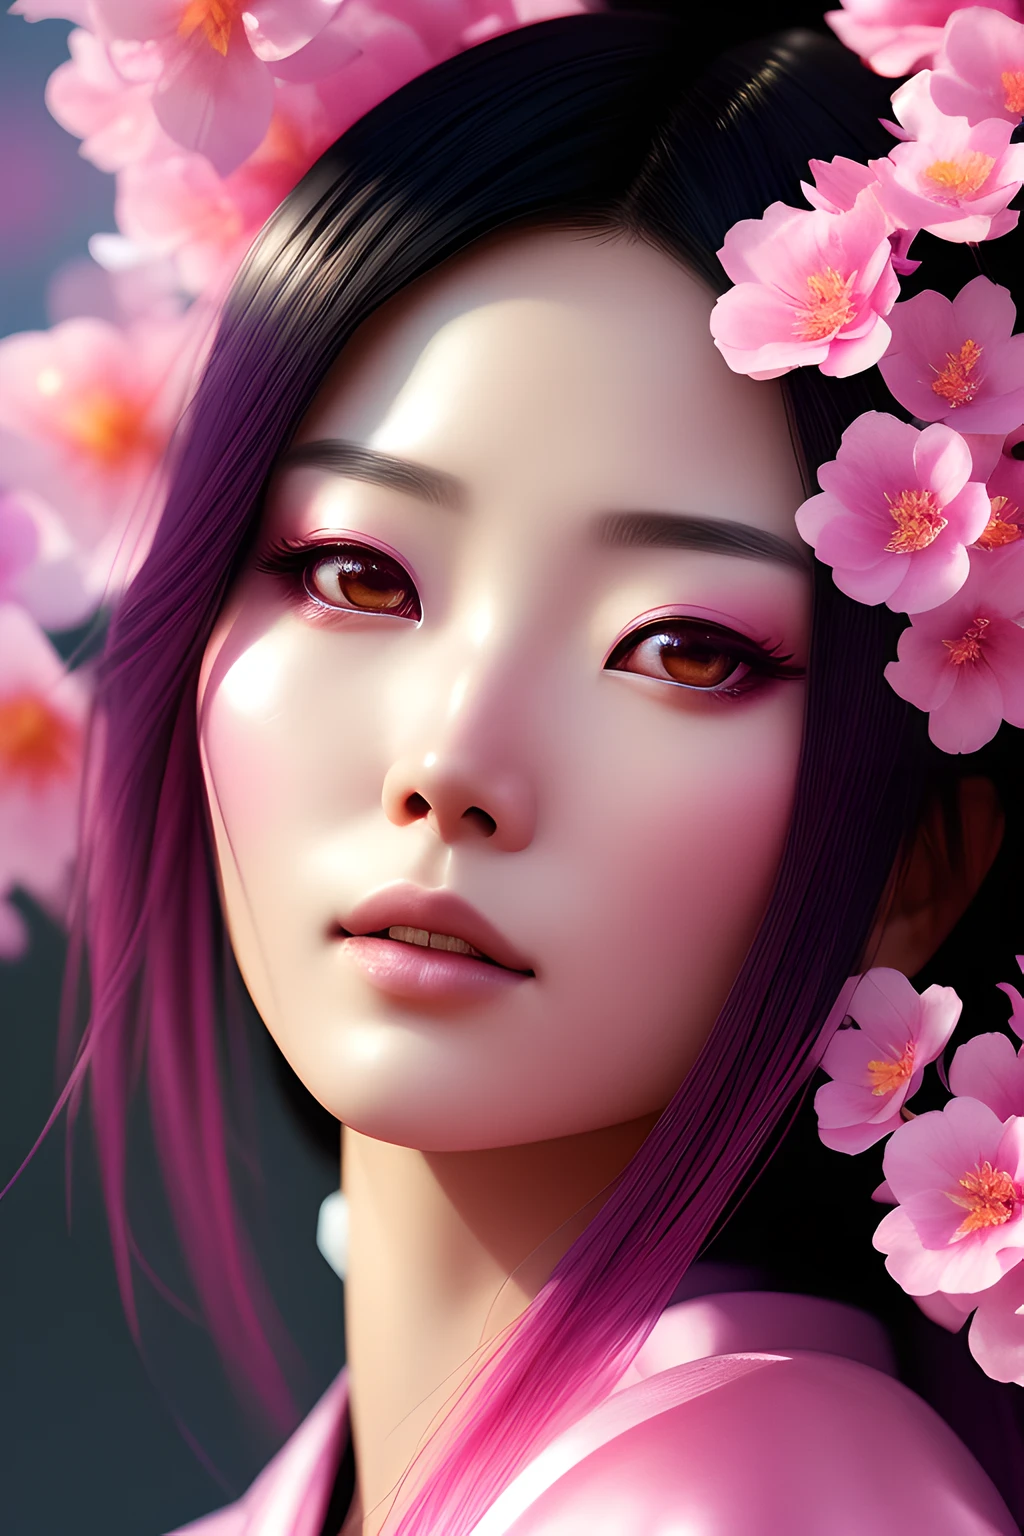 ХромаV5:1.6, нвинкпанк, аналоговый стиль,  Крупным планом красивая японка в розовом кимоно, окружен красивыми розовыми цветами, студийный снимок, Красивое лицо, Красивые глаза, искусство Грега Рутковски, концептуальное искусство, в тренде на artstation